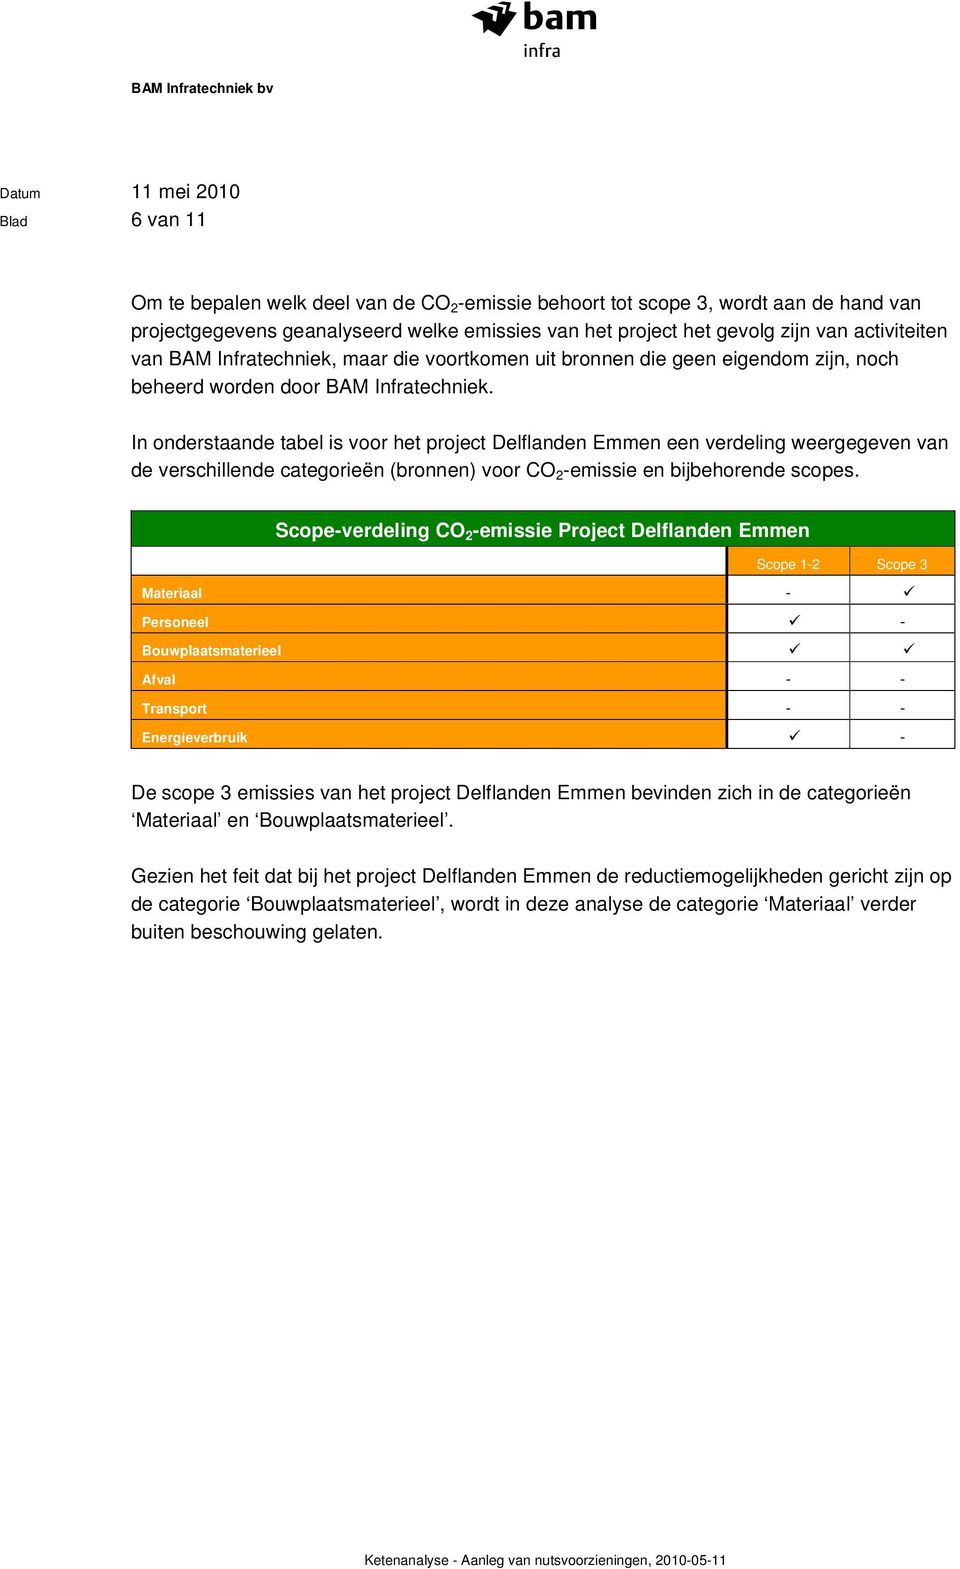 In onderstaande tabel is voor het project Delflanden Emmen een verdeling weergegeven van de verschillende categorieën (bronnen) voor CO 2 -emissie en bijbehorende scopes.